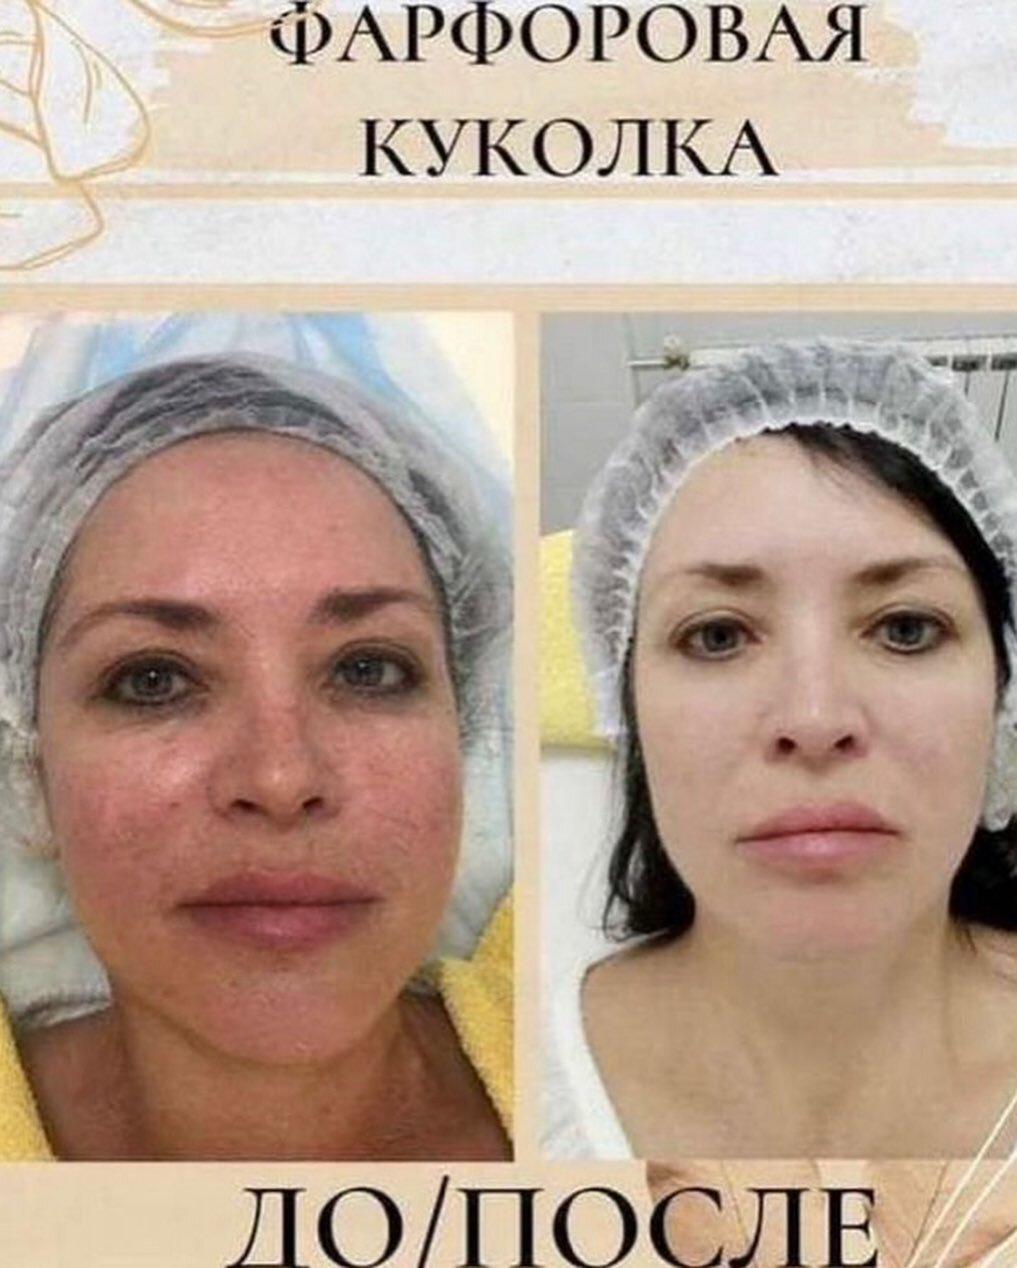 Фарфоровая кукла процедура для лица до и после